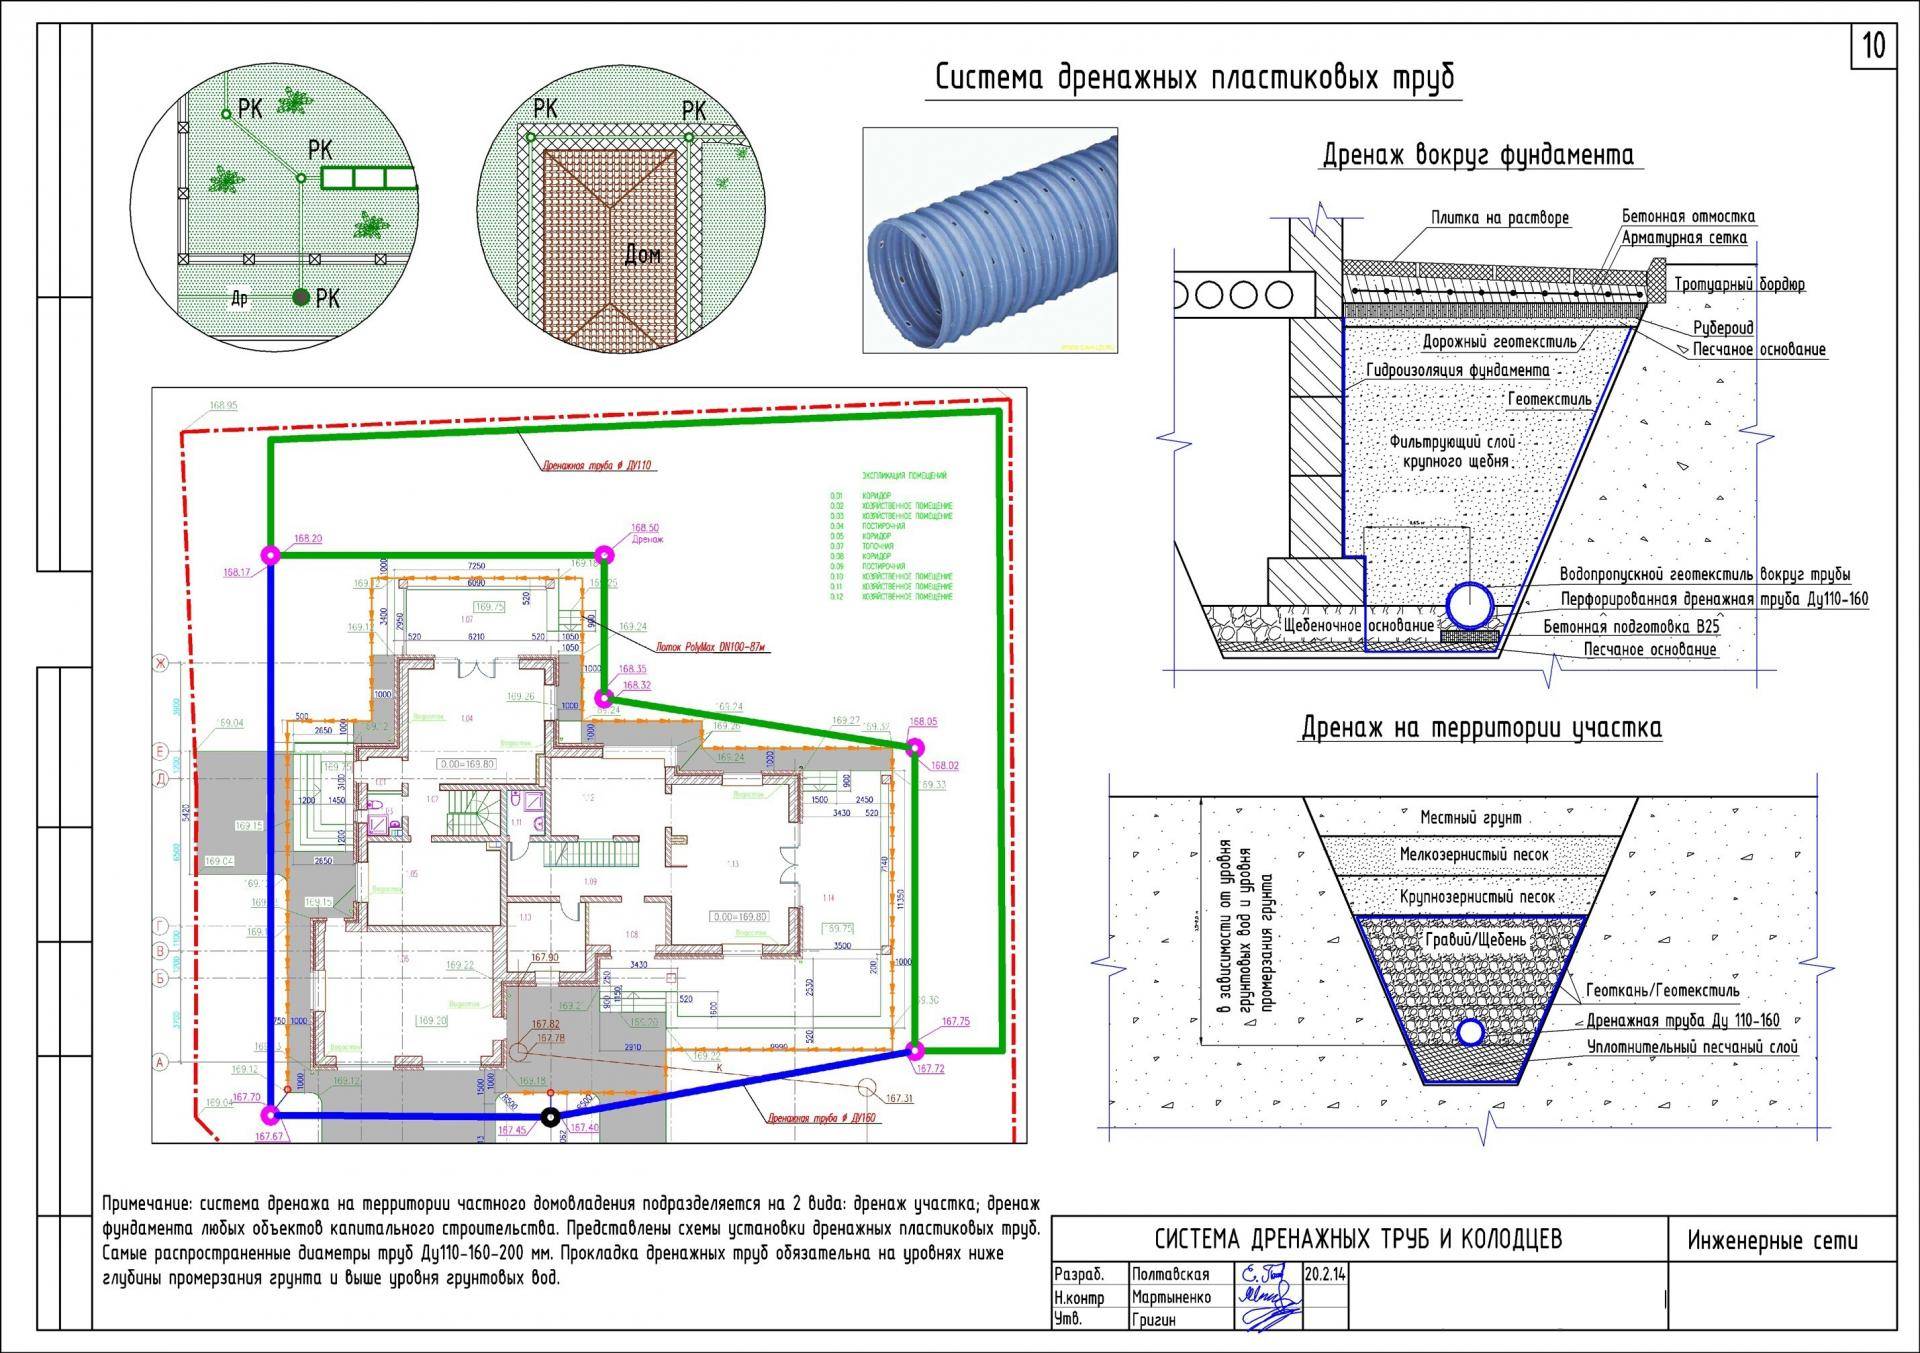 Ливневая канализация в многоэтажном доме: устройство, кто обслуживает и нормы снип